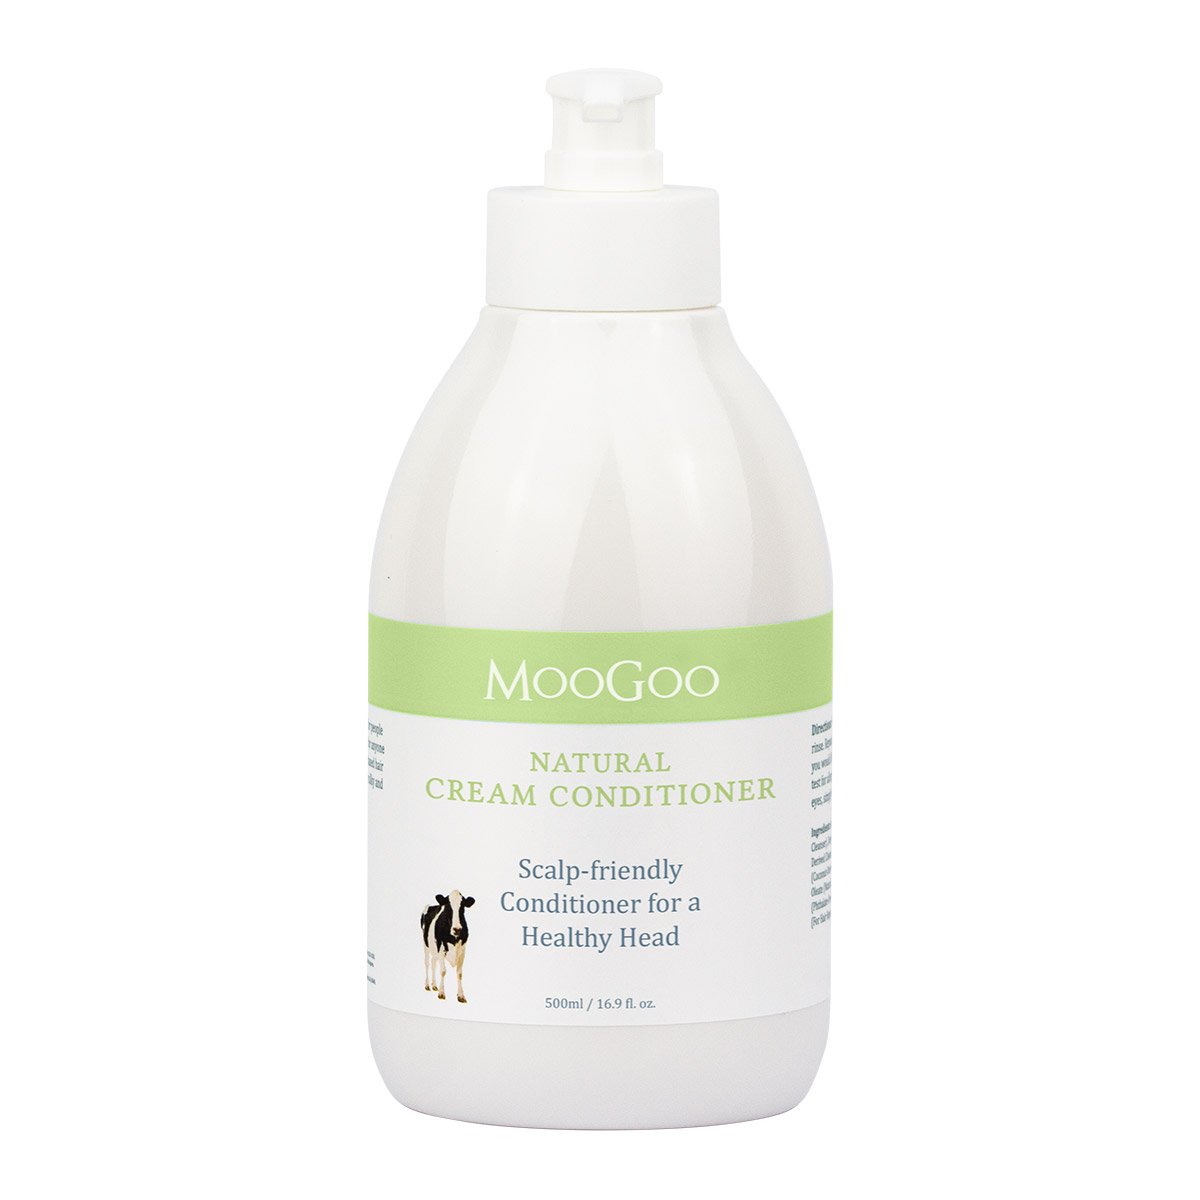 MooGoo Skincare Natural Cream Conditioner 500ml